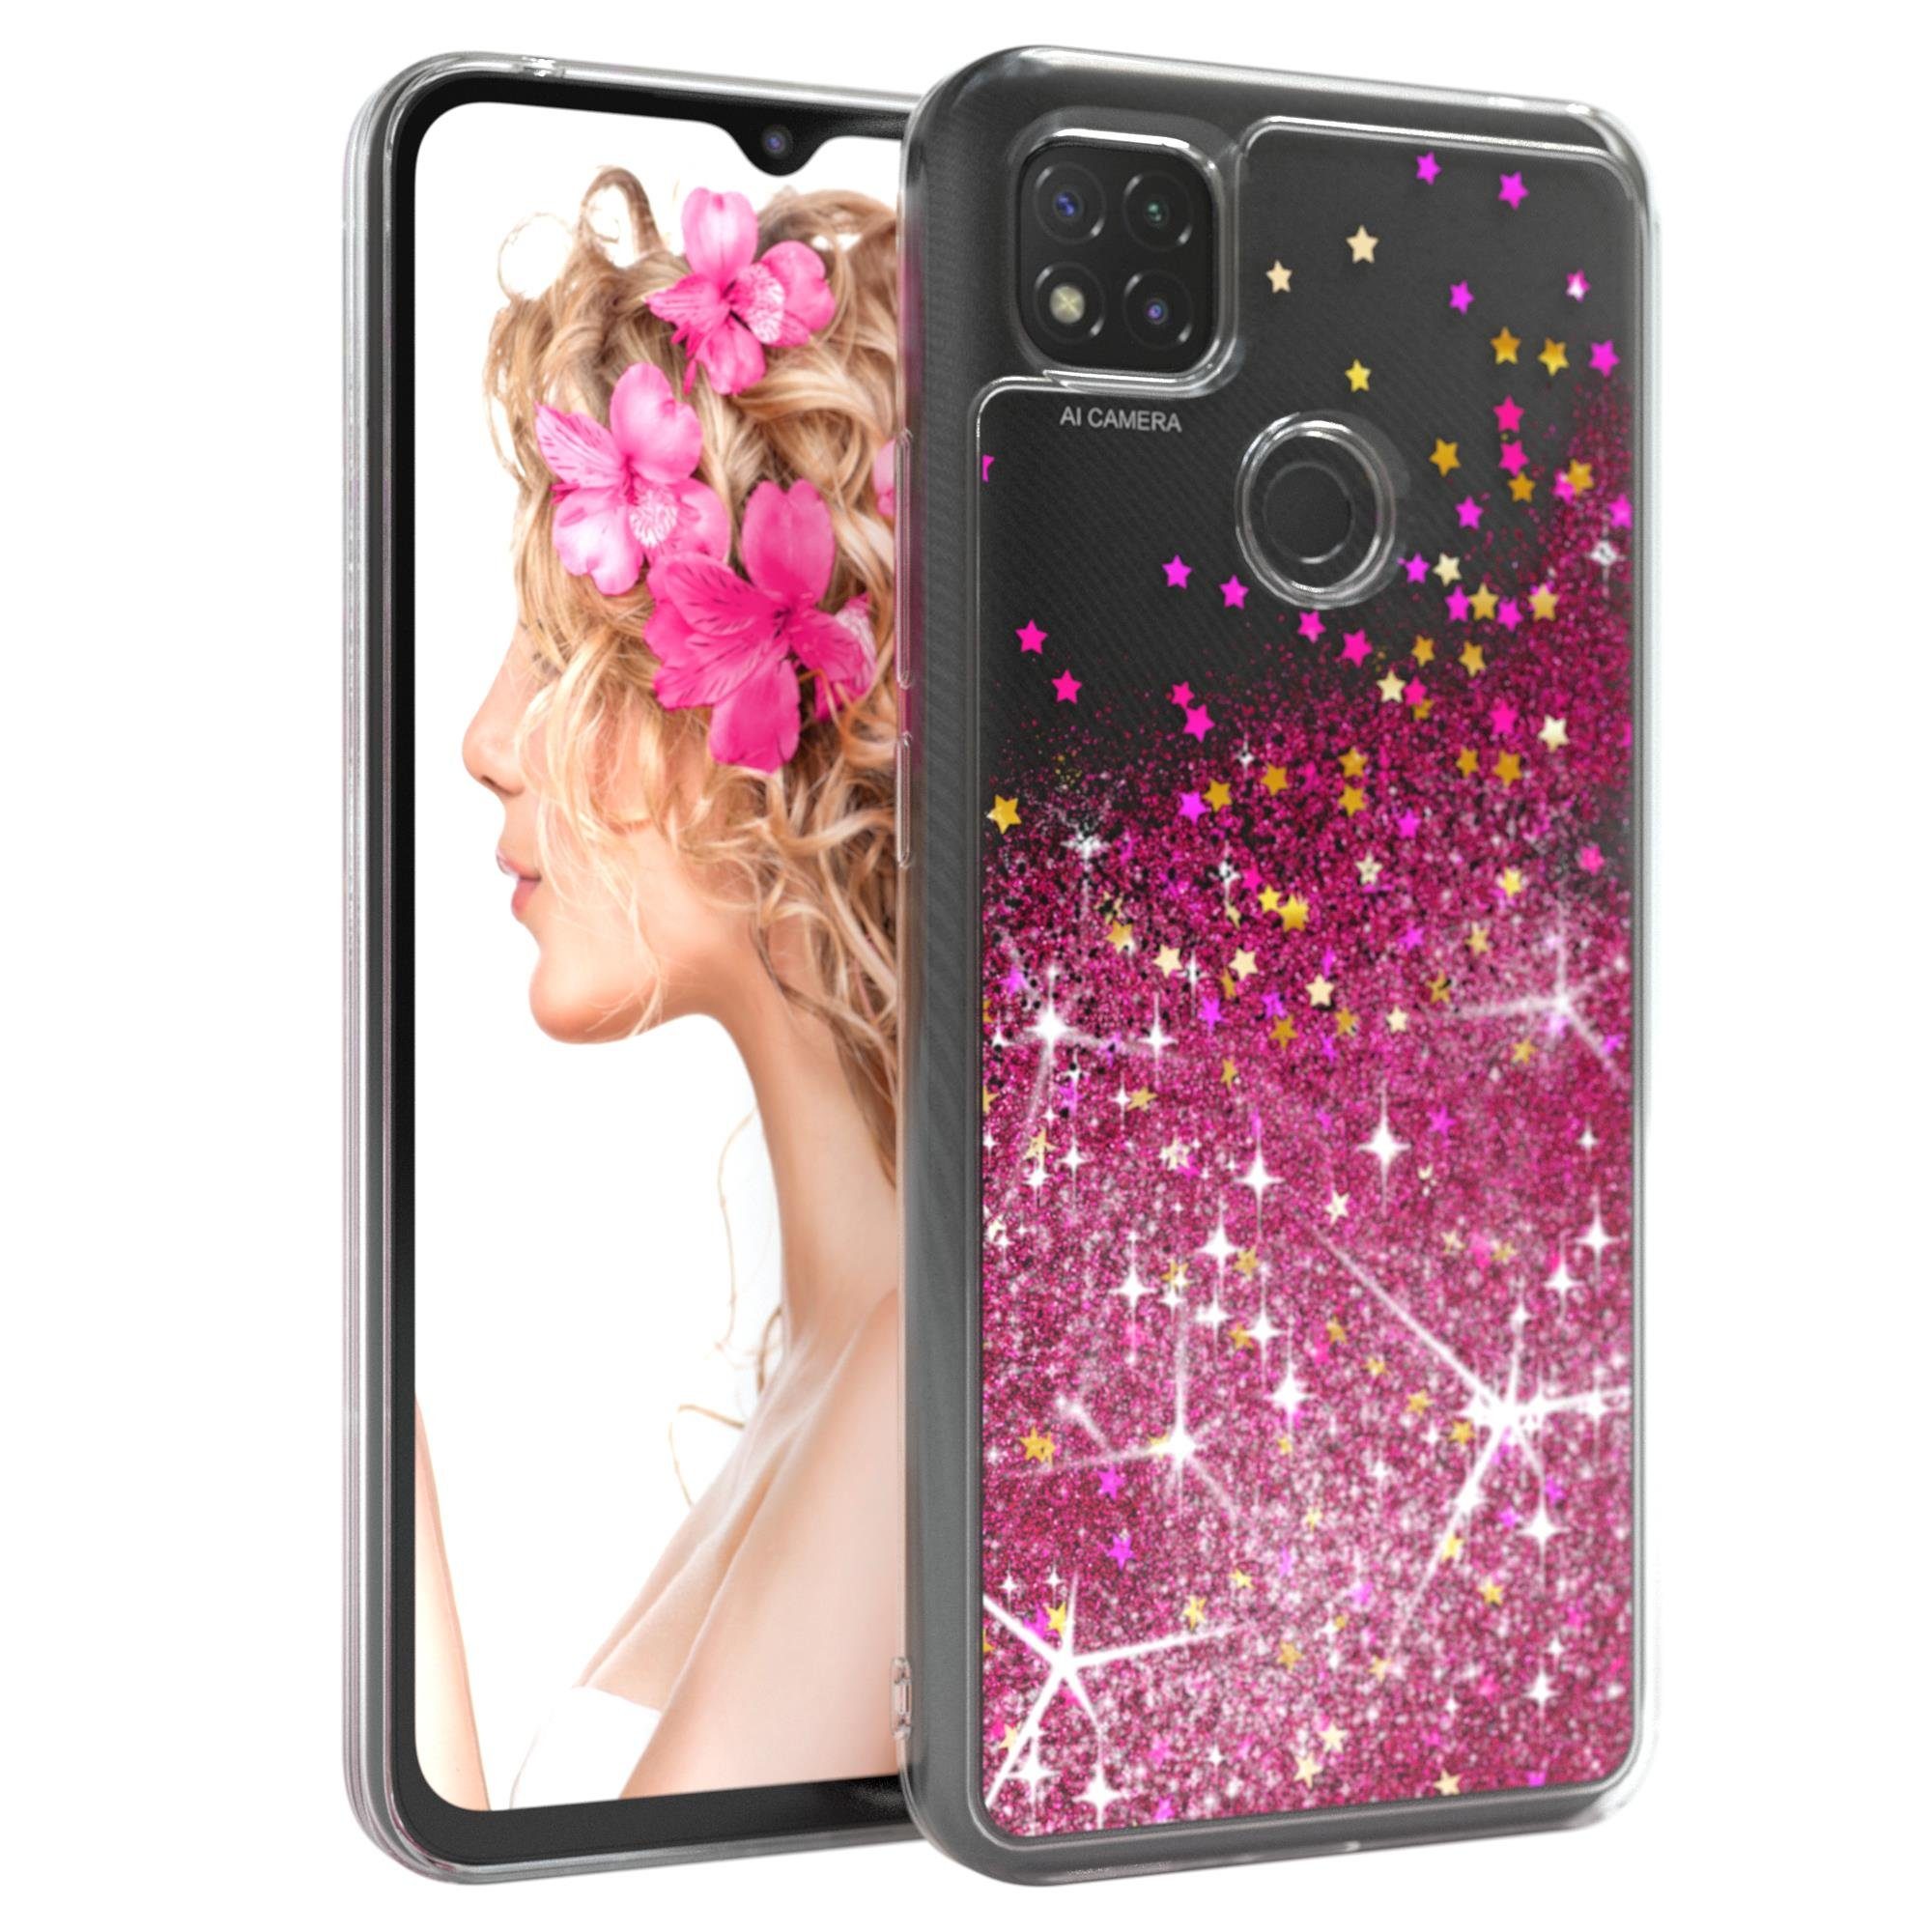 EAZY CASE Handyhülle Liquid Glittery Case für Xiaomi Redmi 9C 6,53 Zoll, Glitzerhülle Shiny Slimcover stoßfest Durchsichtig Bumper Case Pink